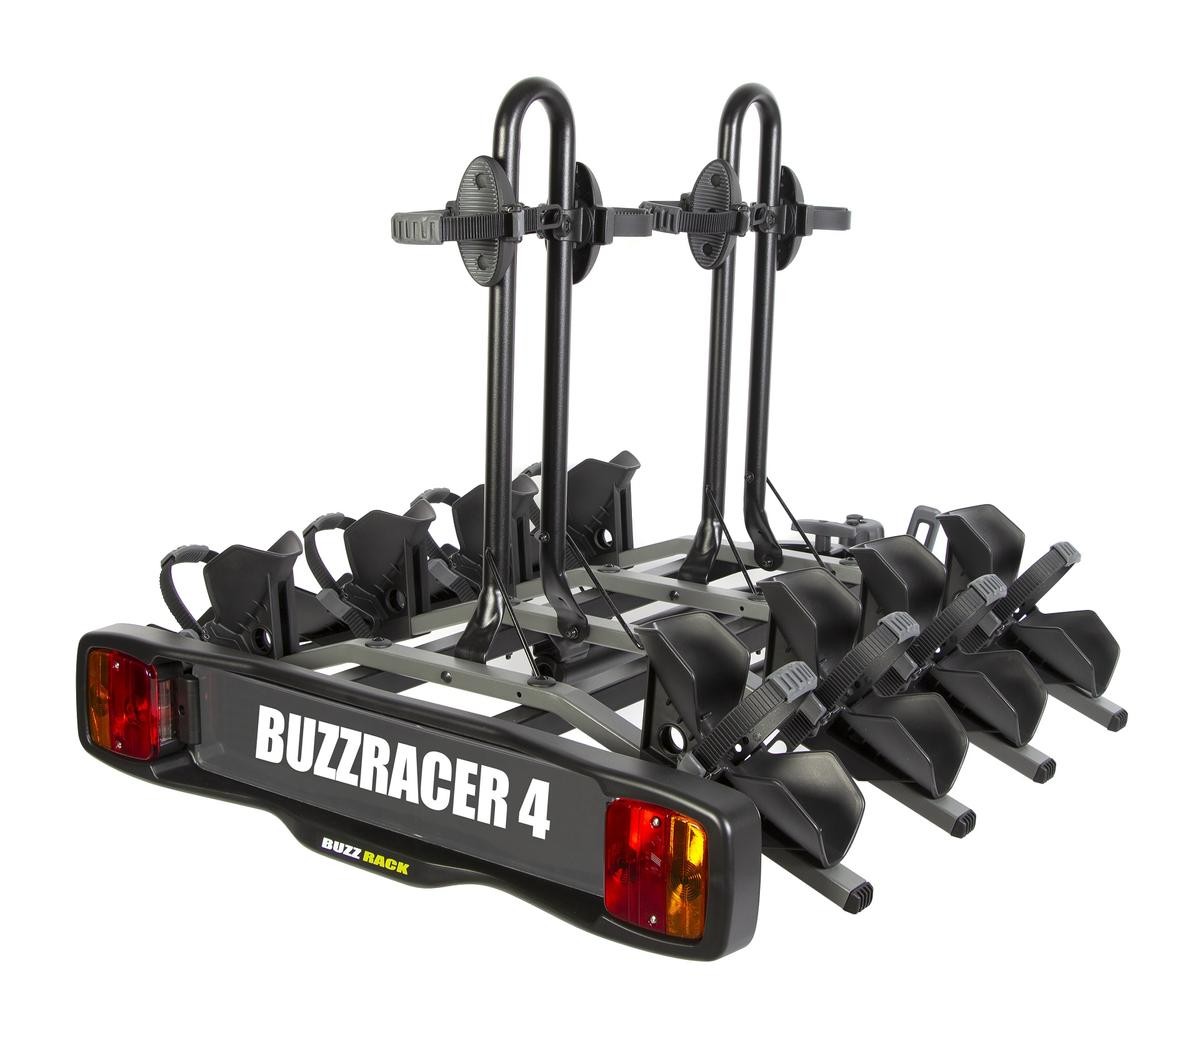 Boot mounted bike rack BUZZ RACK BUZZRACER 4 5985